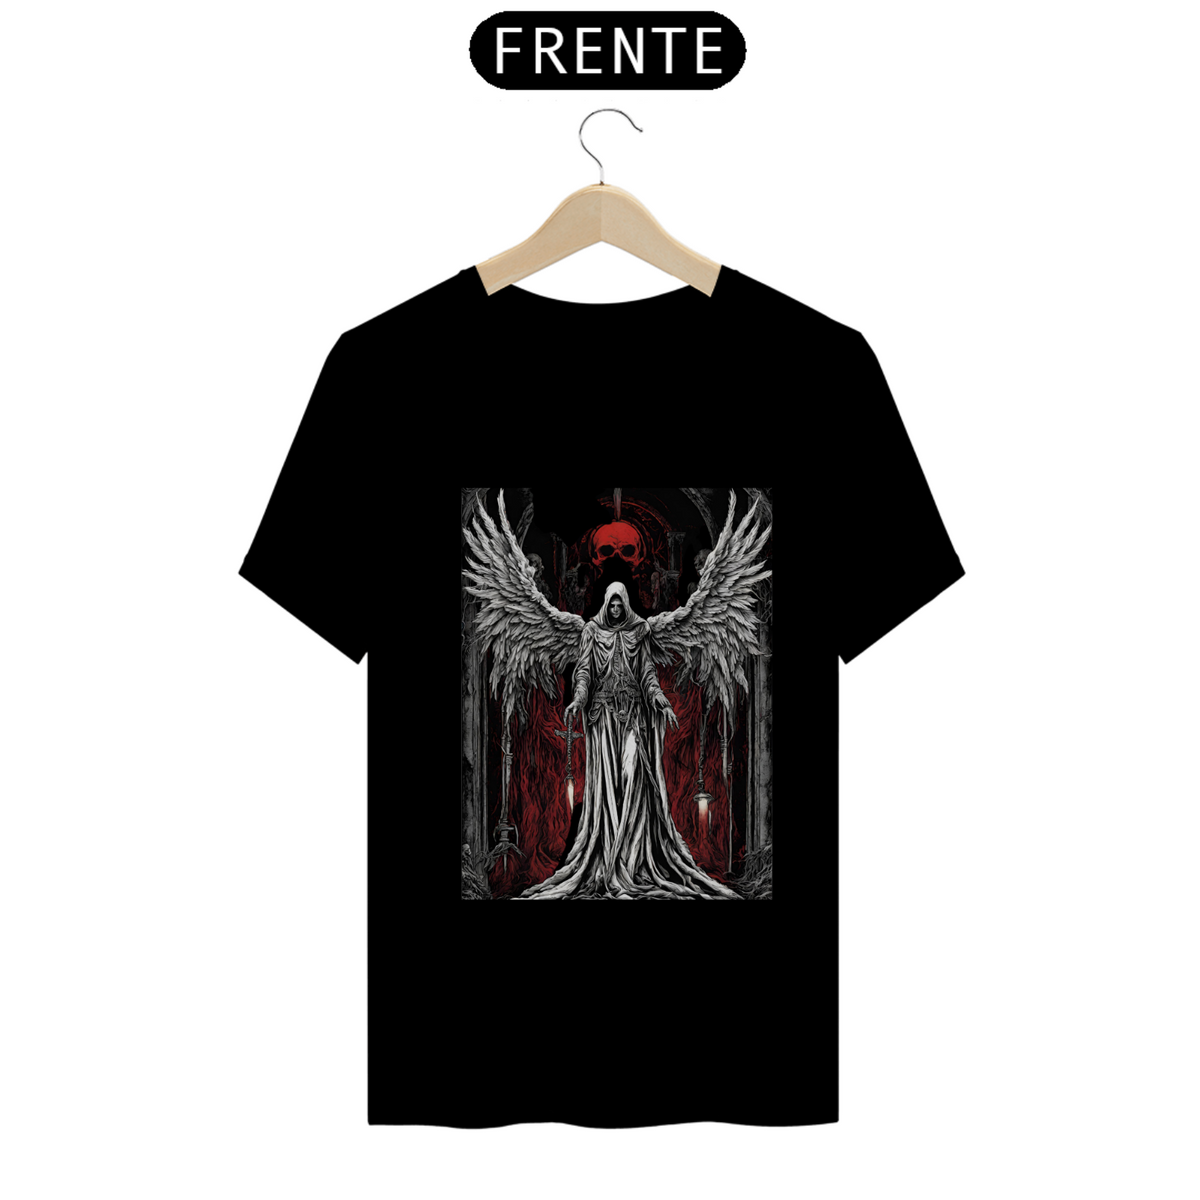 Nome do produto: Anjo da morte classic t shirt